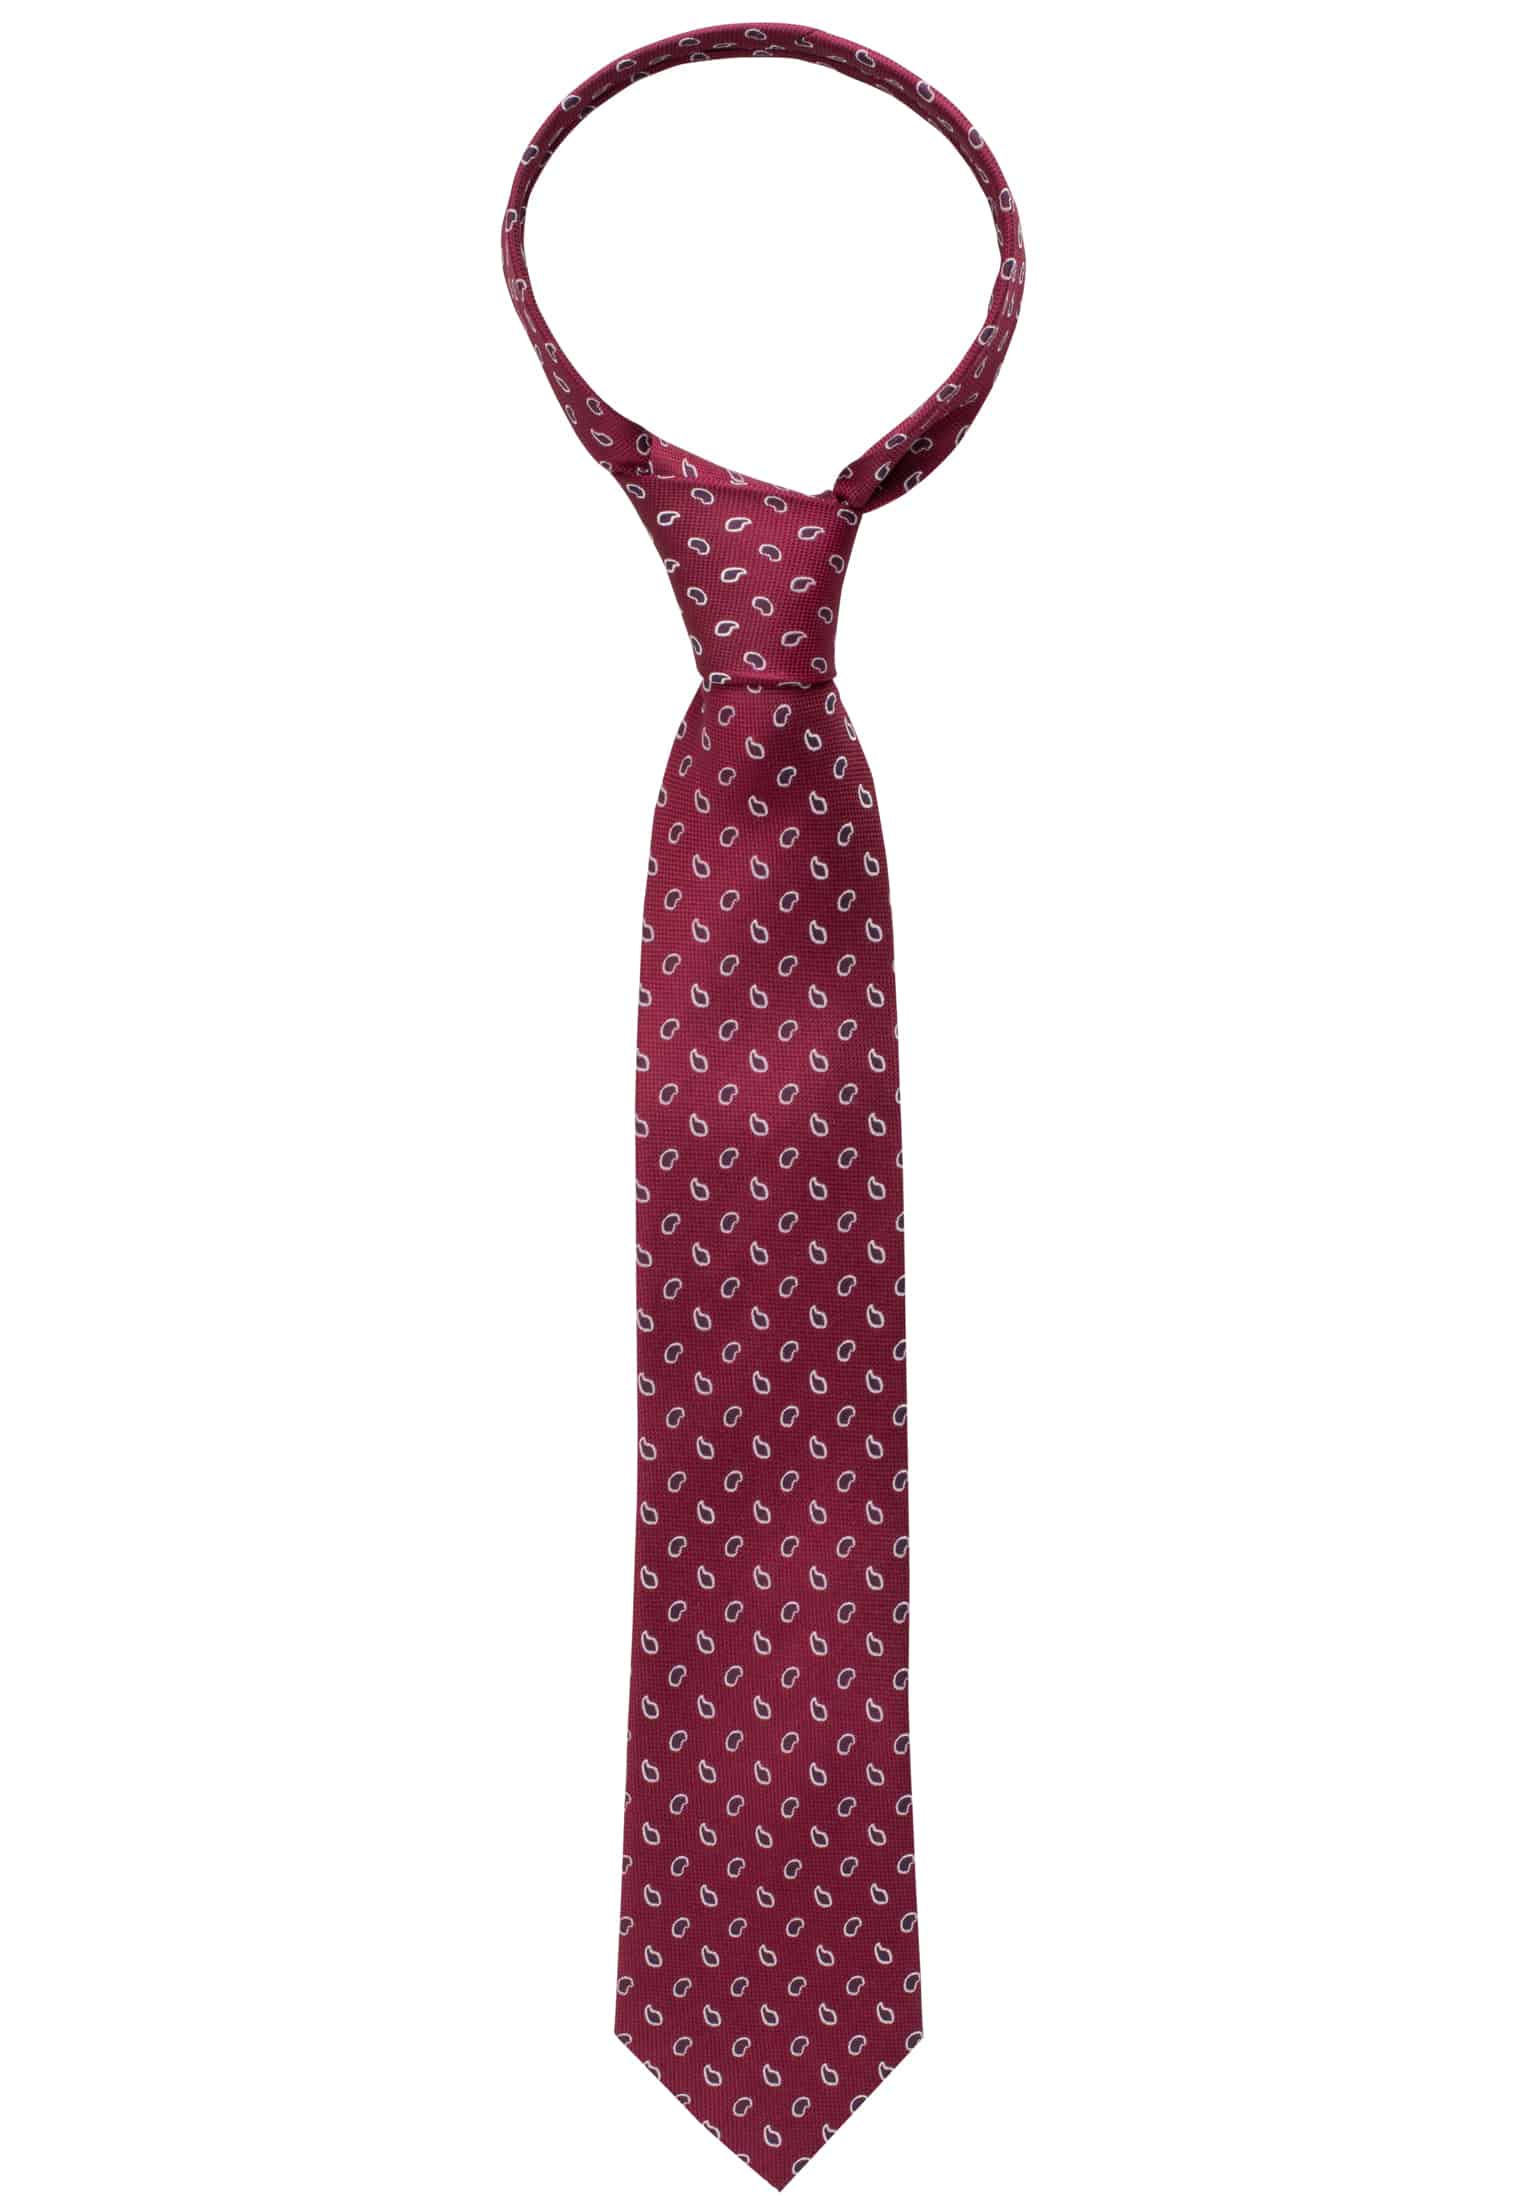 Krawatte in bordeaux gemustert | bordeaux | 142 | 1AC00541-05-84-142